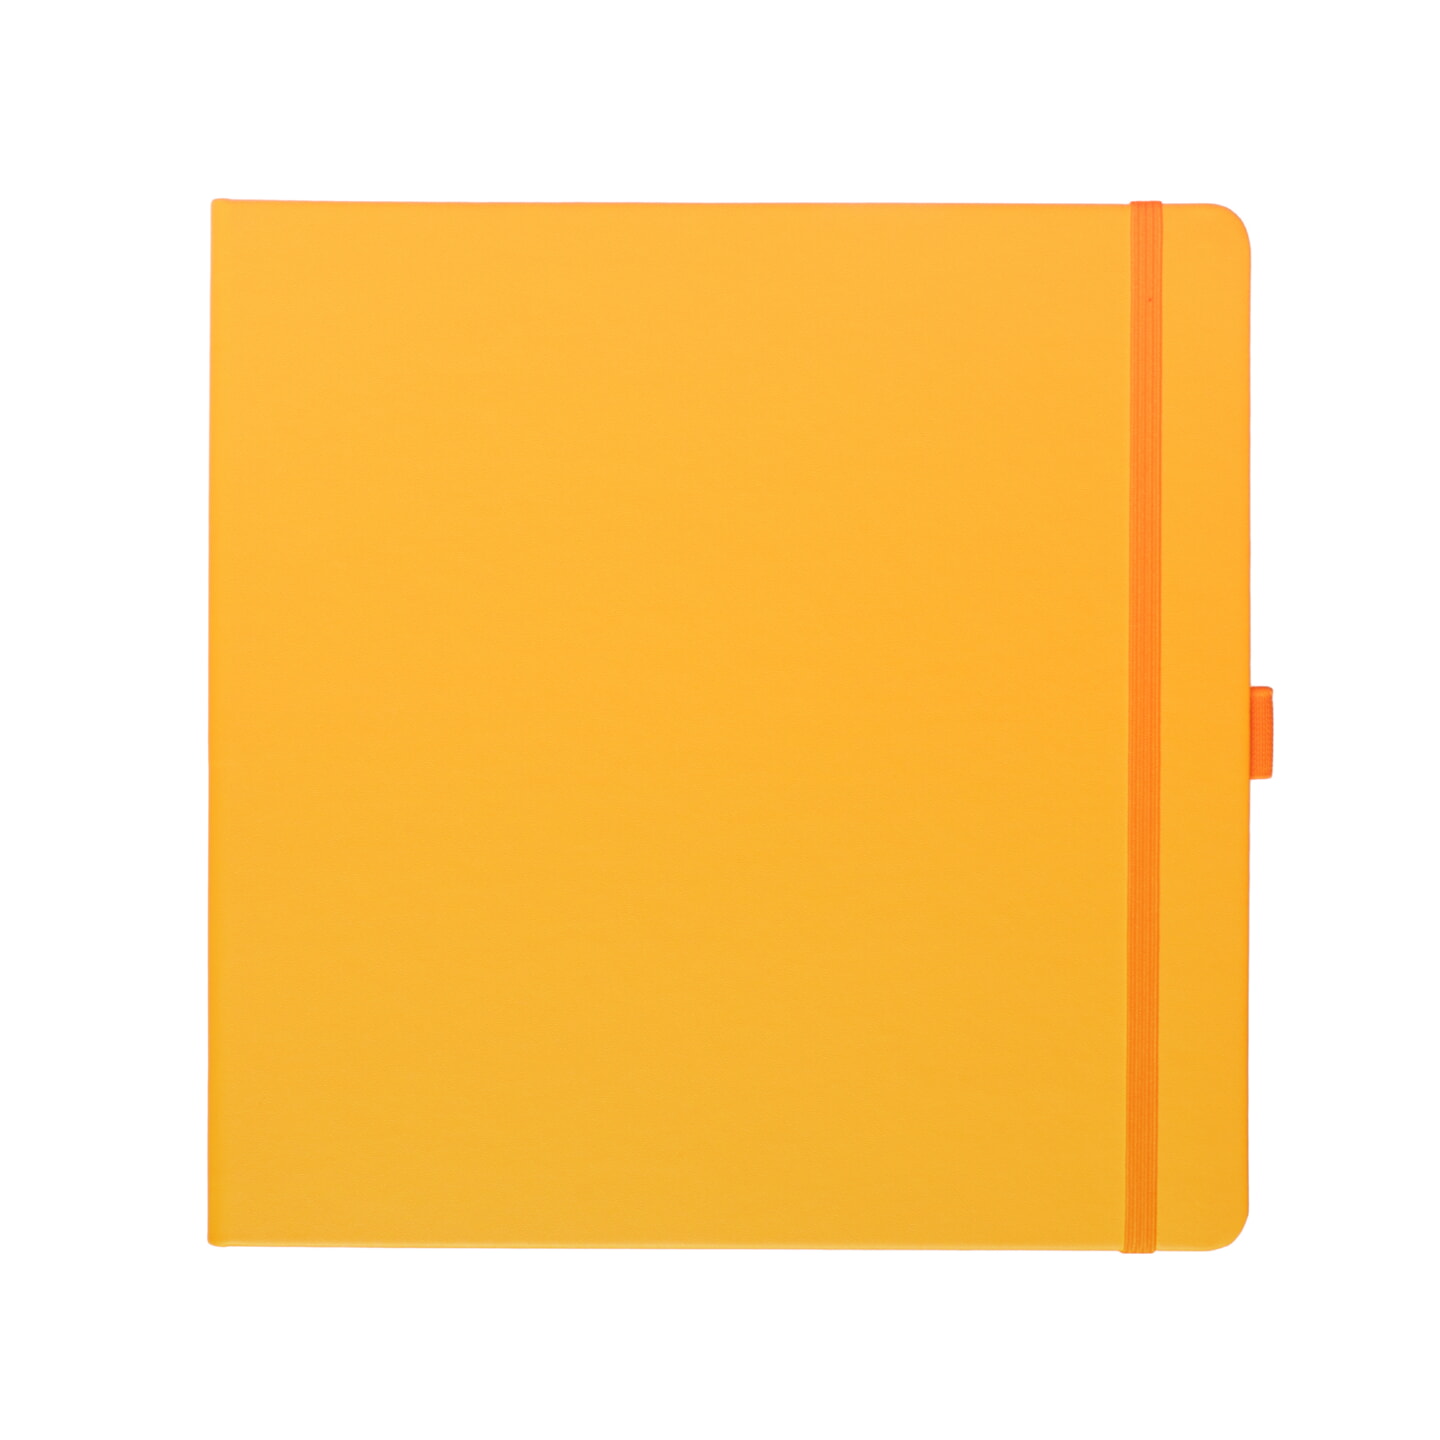 Блокнот для зарисовок Sketchmarker 140г/кв.м 20*20cм 80л твердая обложка Оранжевый